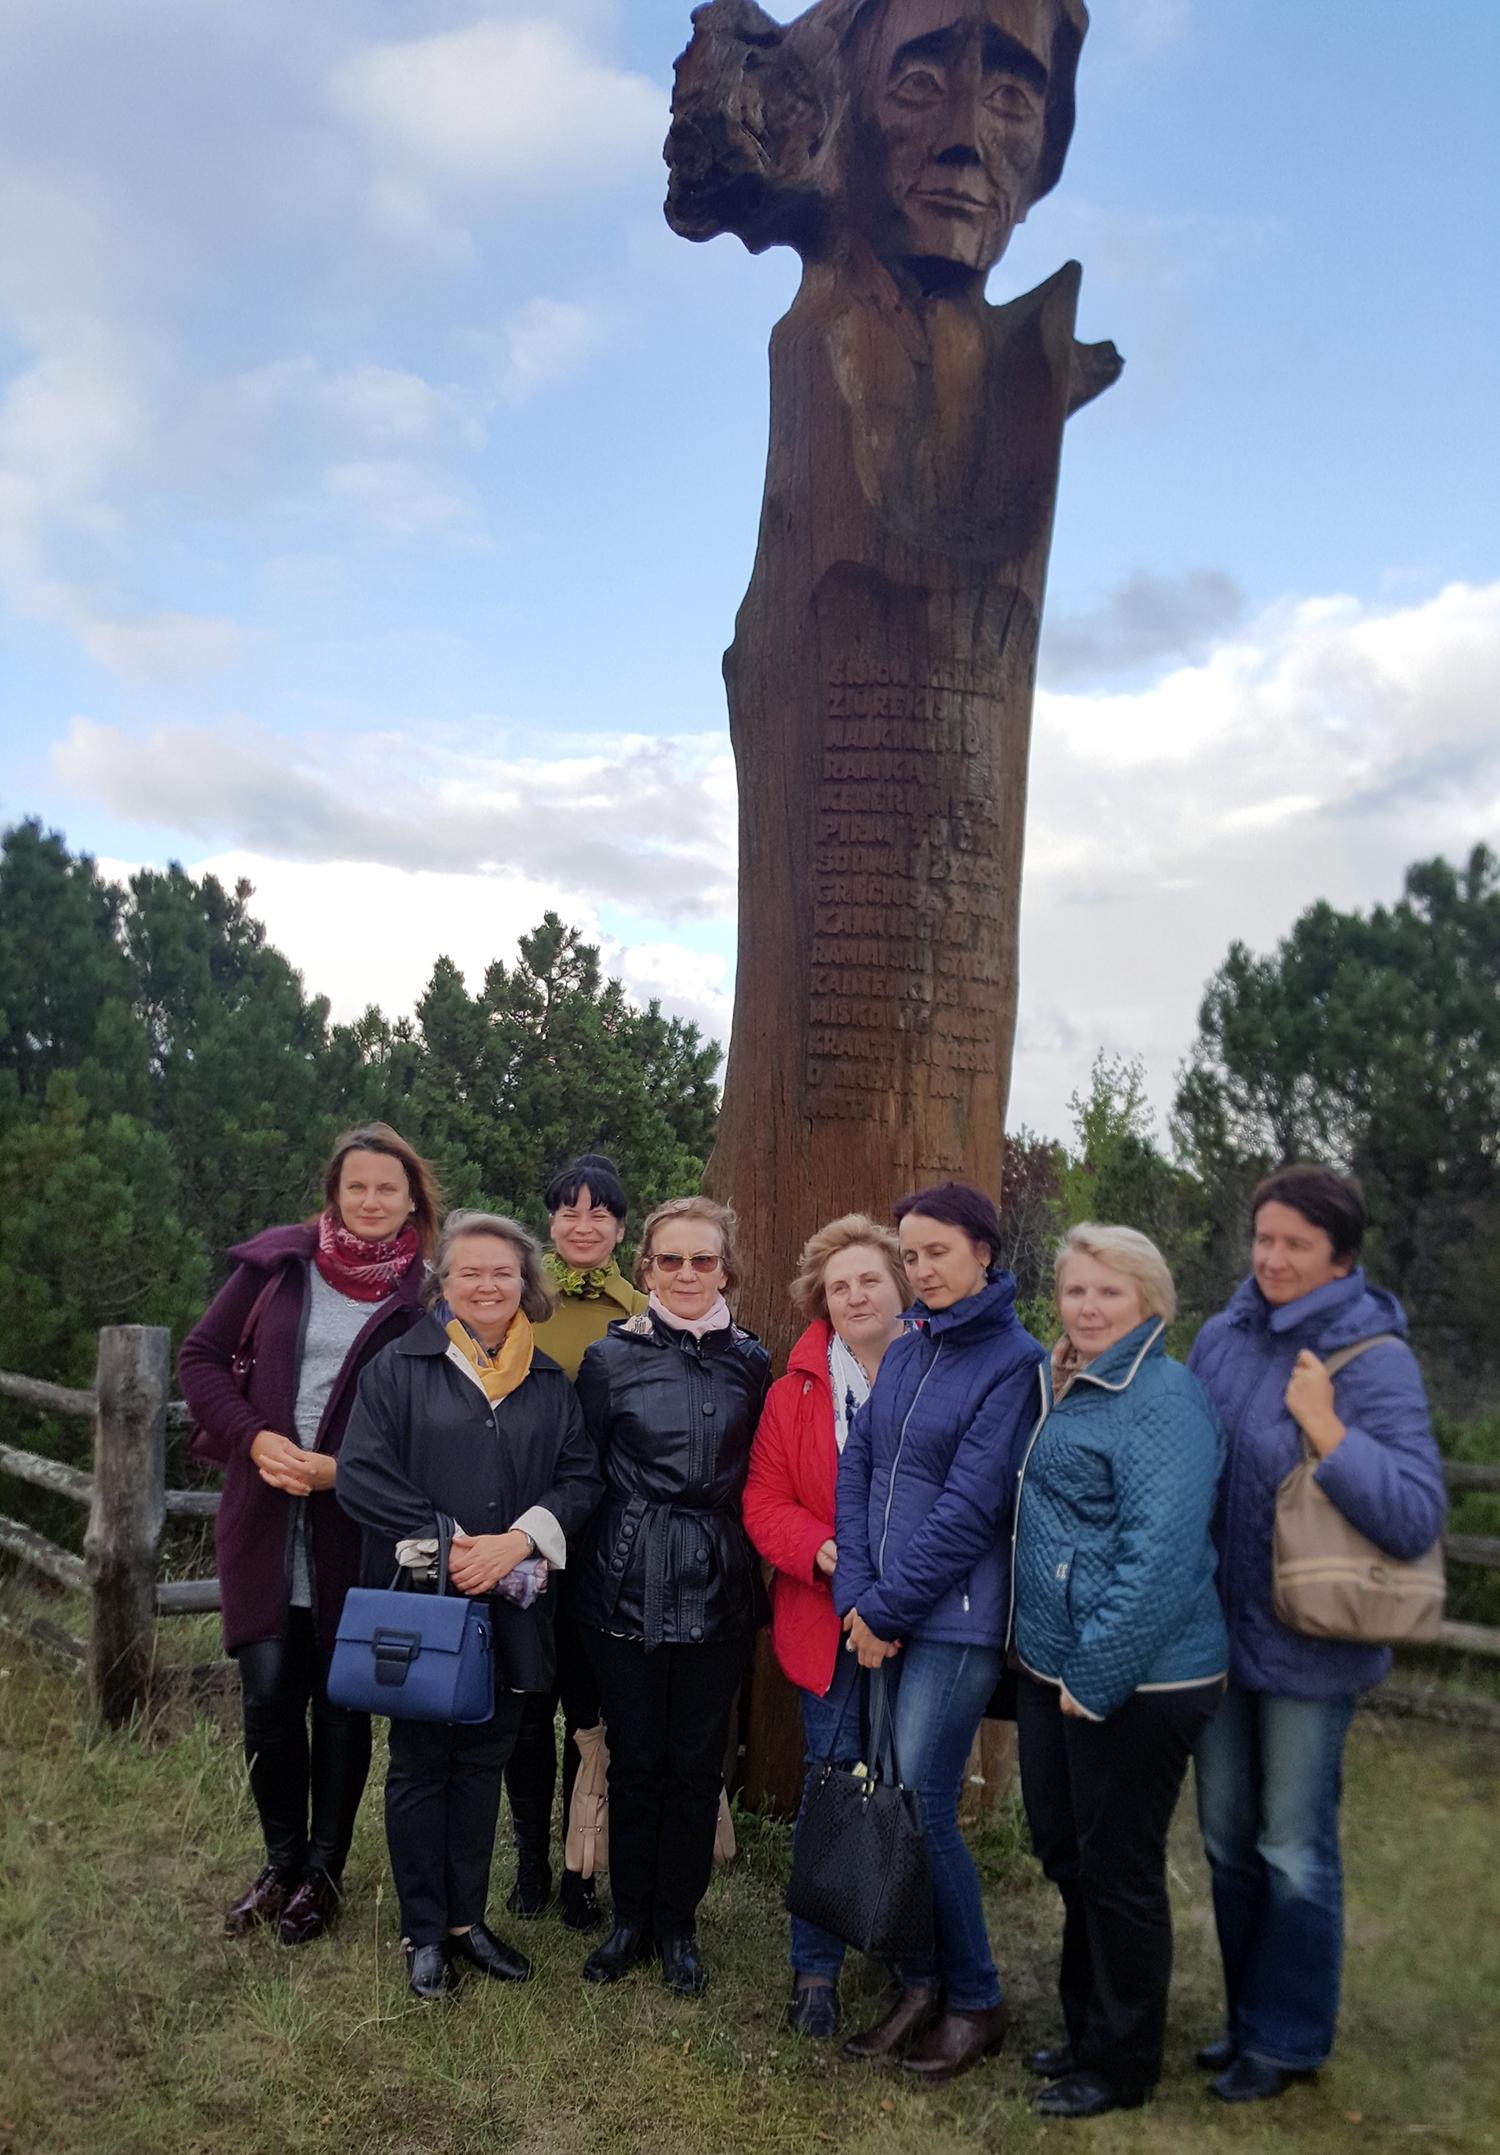 Tobulinosi Ukmergės lituanistai / Ukmergės lietuvių kalbos ir literatūros mokytojai prie paminklo Liudvikui Rėzai Neringoje.